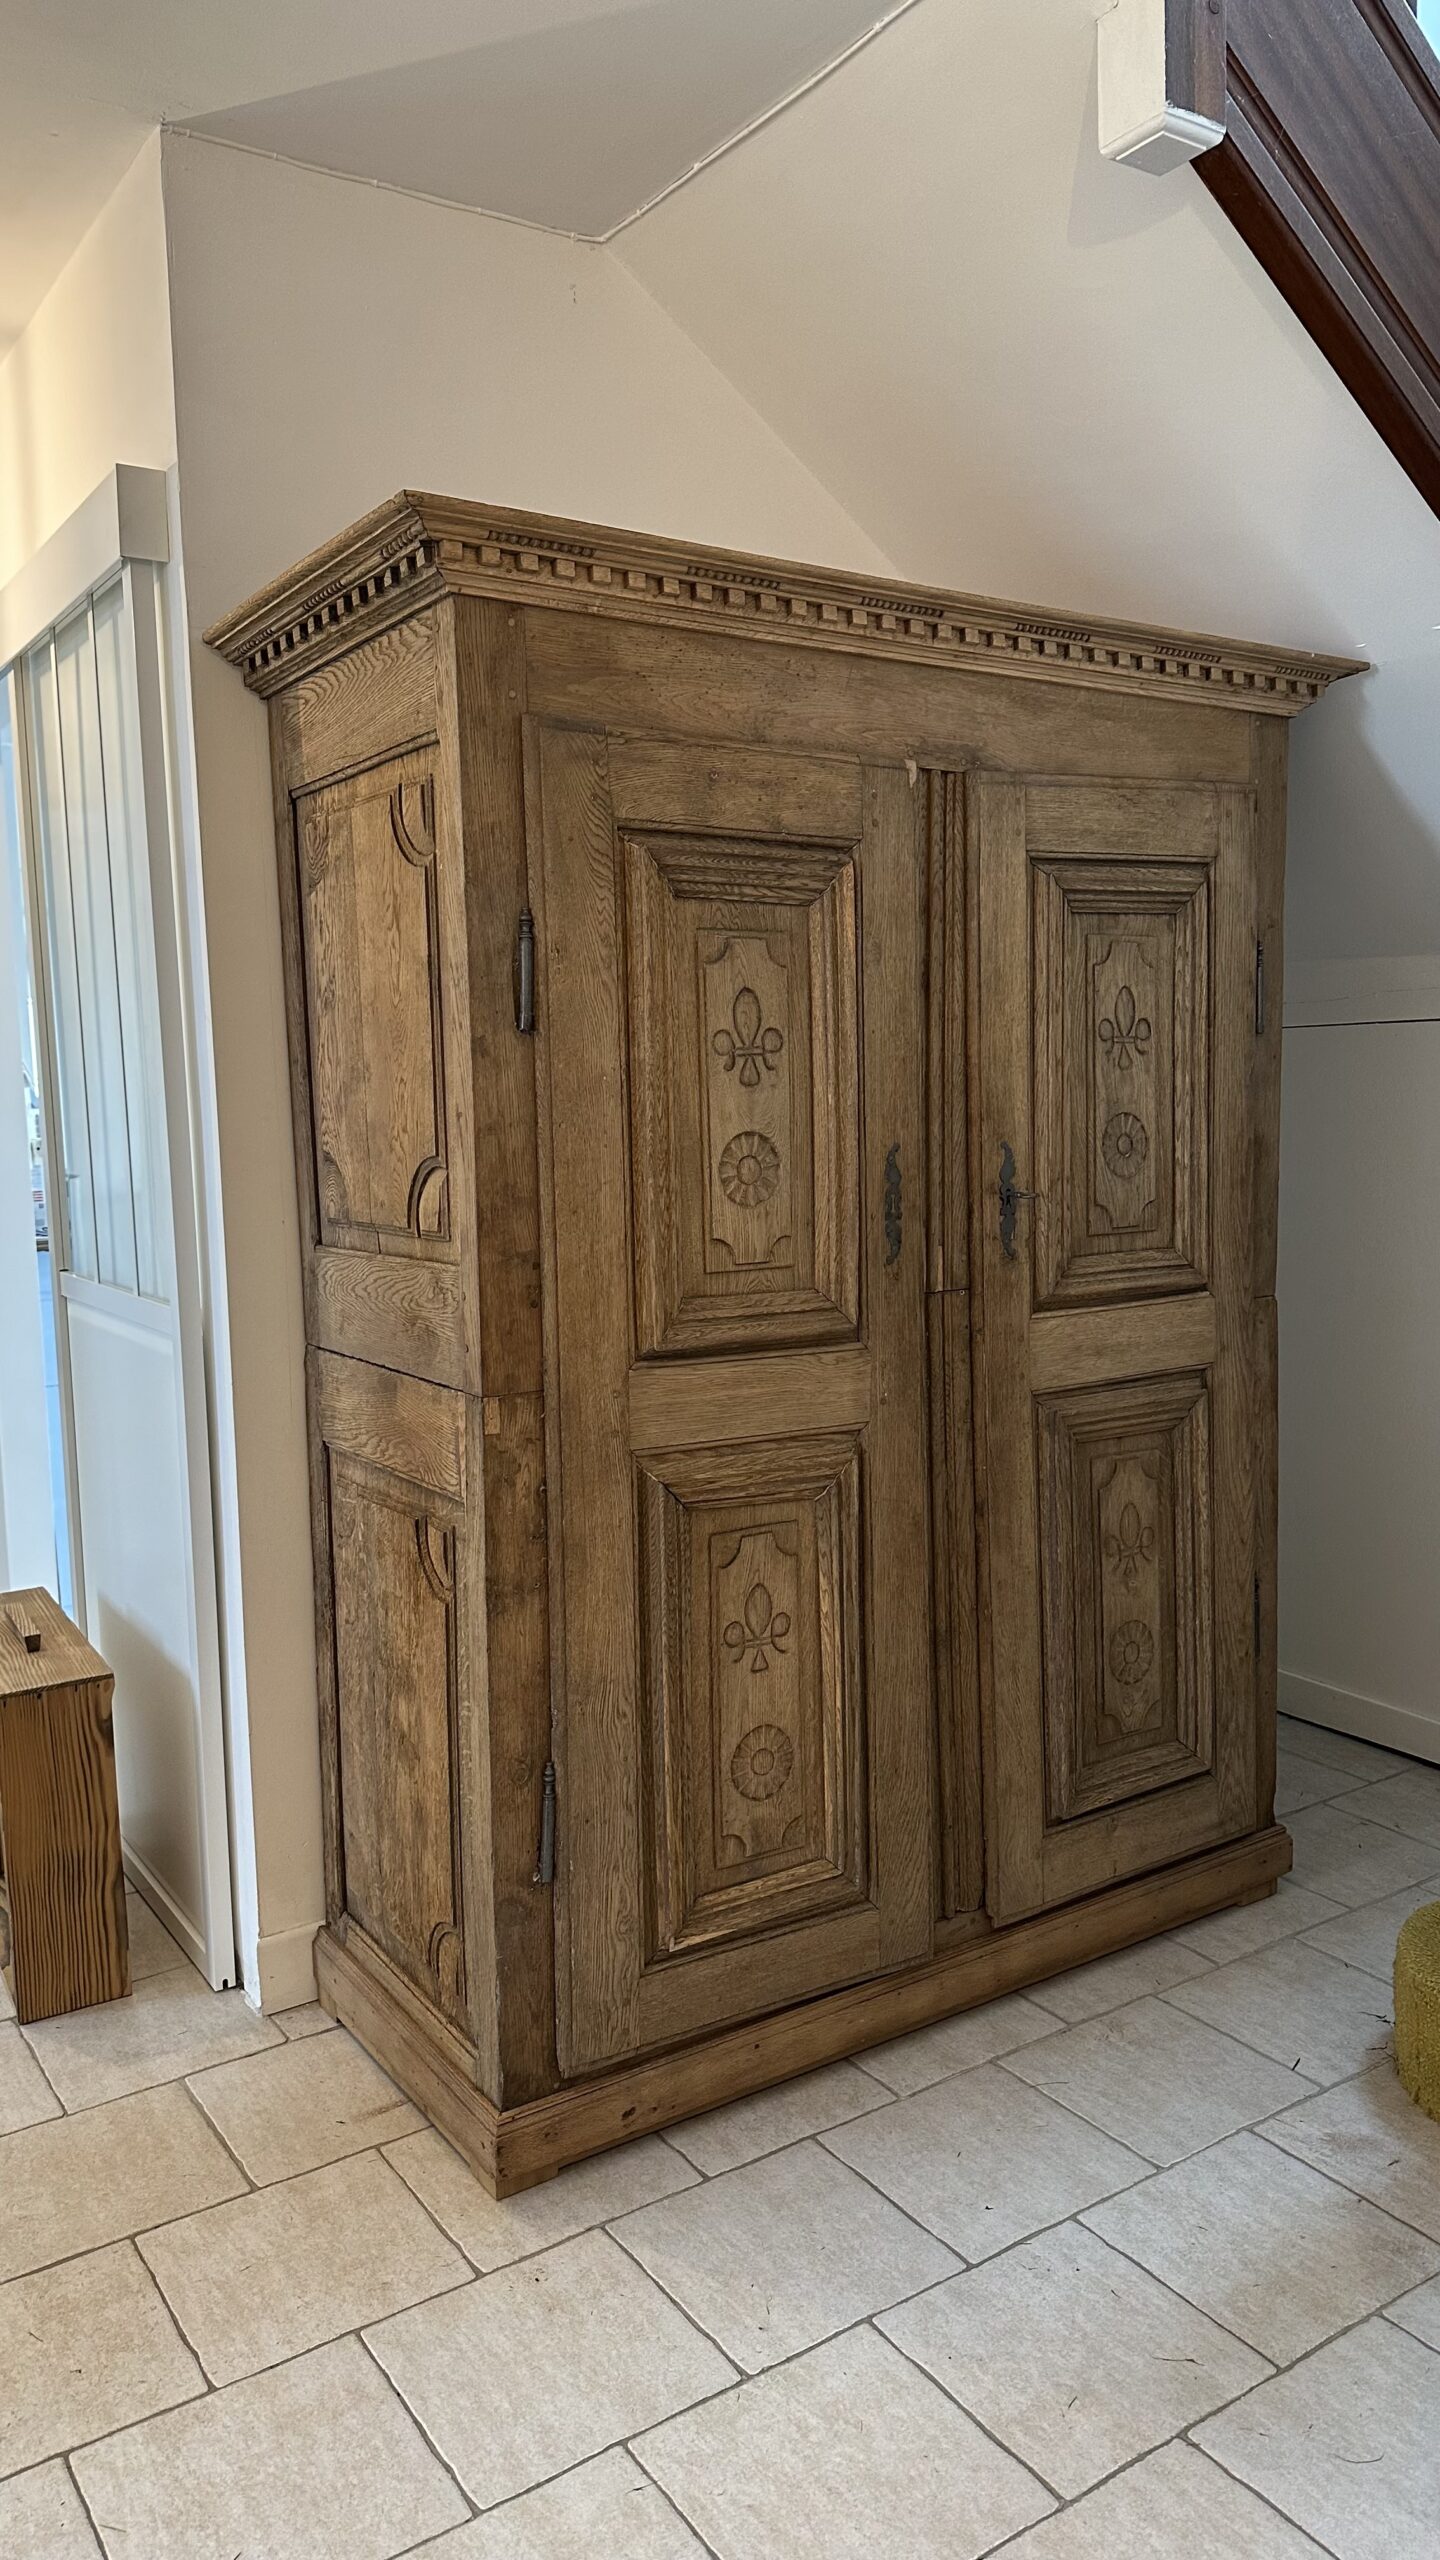 rénovation armoire brest